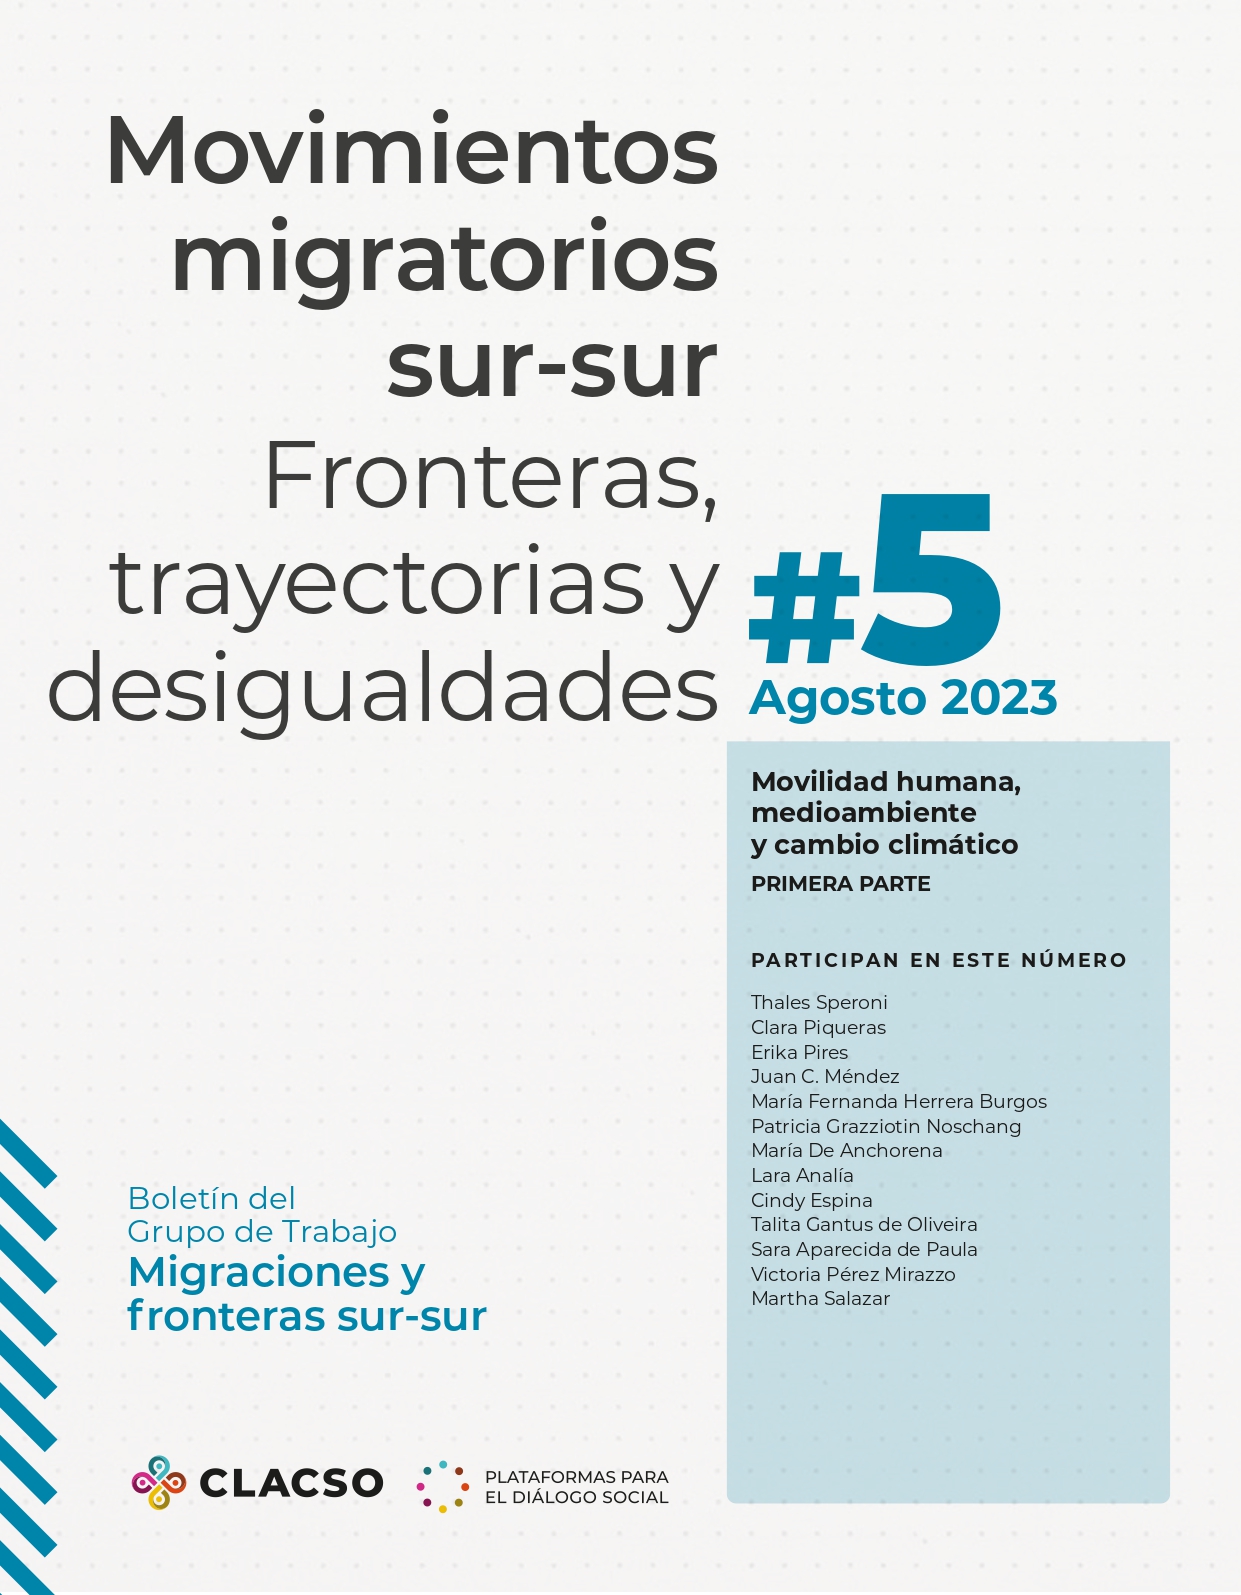 Movimientos Migratorios Sur-Sur – Grupo de Trabajo Migraciones y Fronteras sur-sur